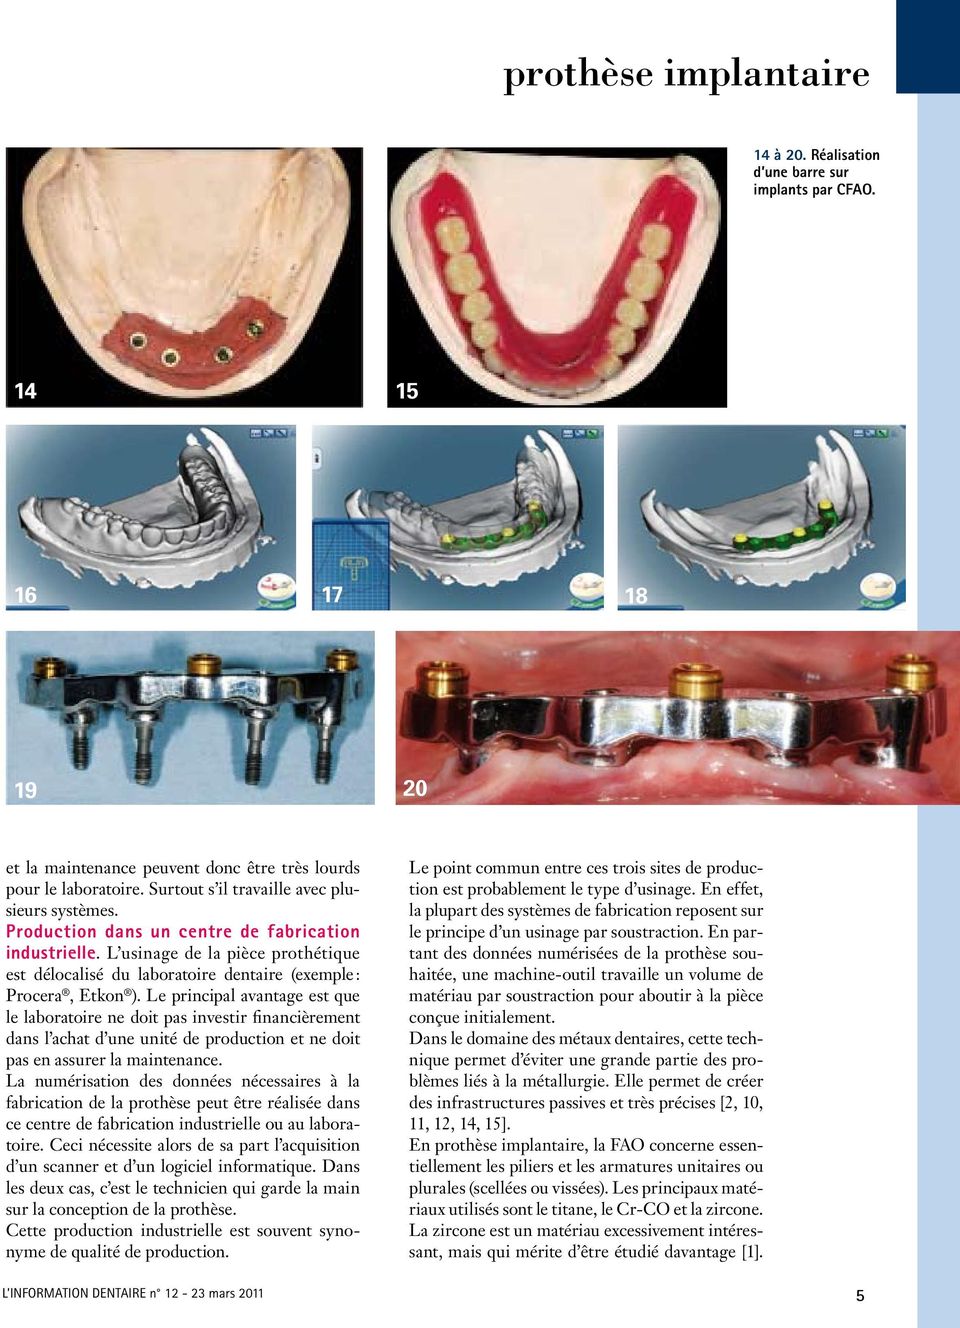 L usinage de la pièce prothétique est délocalisé du laboratoire dentaire (exemple : Procera, Etkon ).